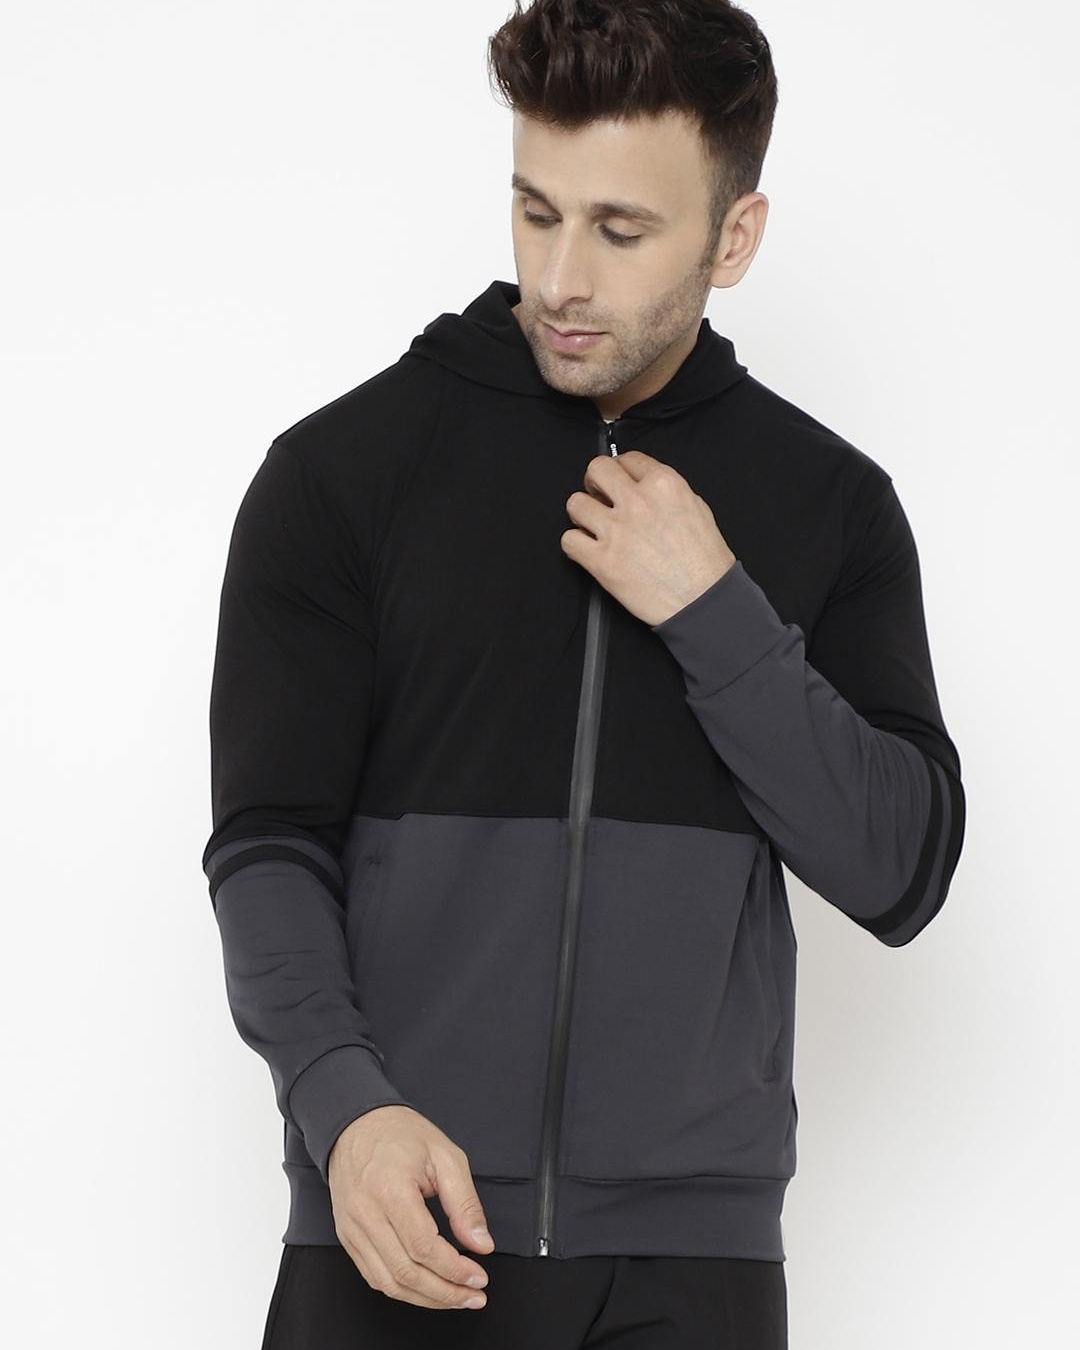 Buy Men's Black & Grey Color Block Hooded Jacket for Men Black Online ...